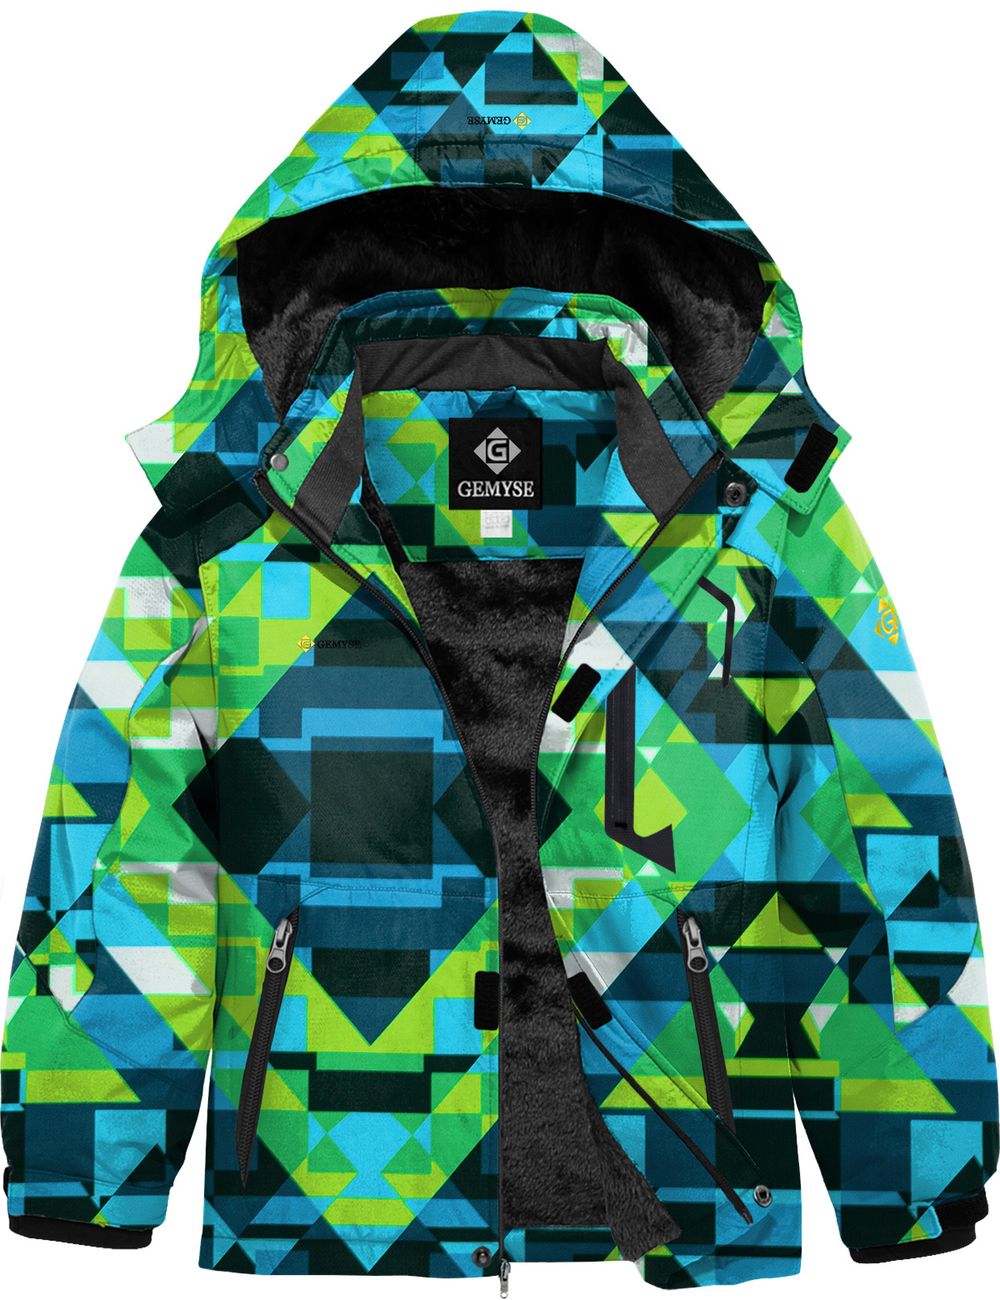 8FANS & GEMYSE Boy's Waterproof Ski Snow Jacket Hooded Fleece Windproof Winter Jacket